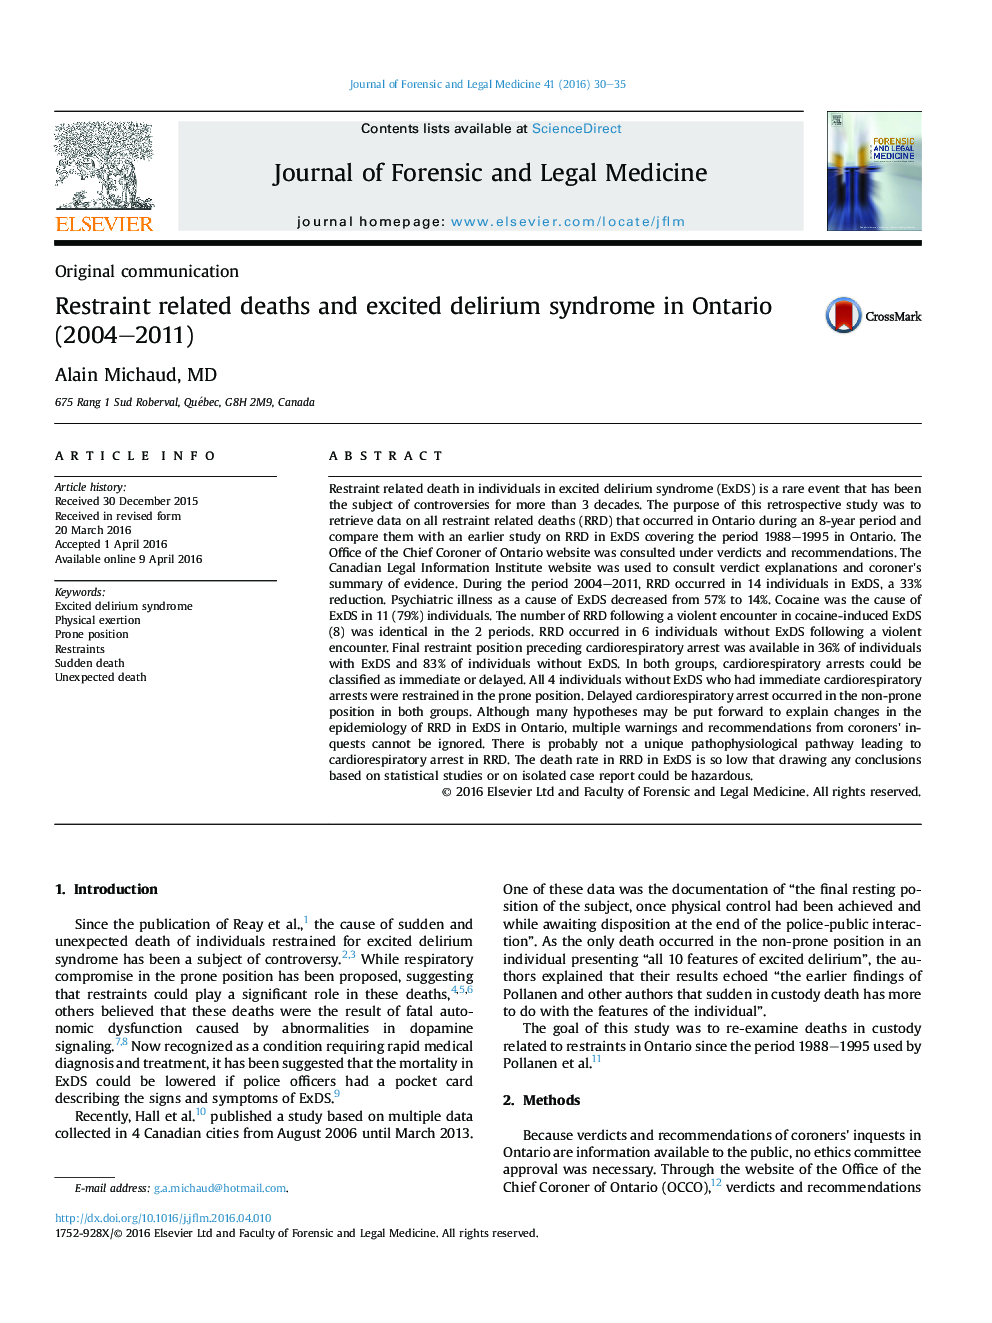 محدود کردن مرگ و میر مرتبط و سندرم بدخیم هیجانی در انتاریو (2004-2011) 